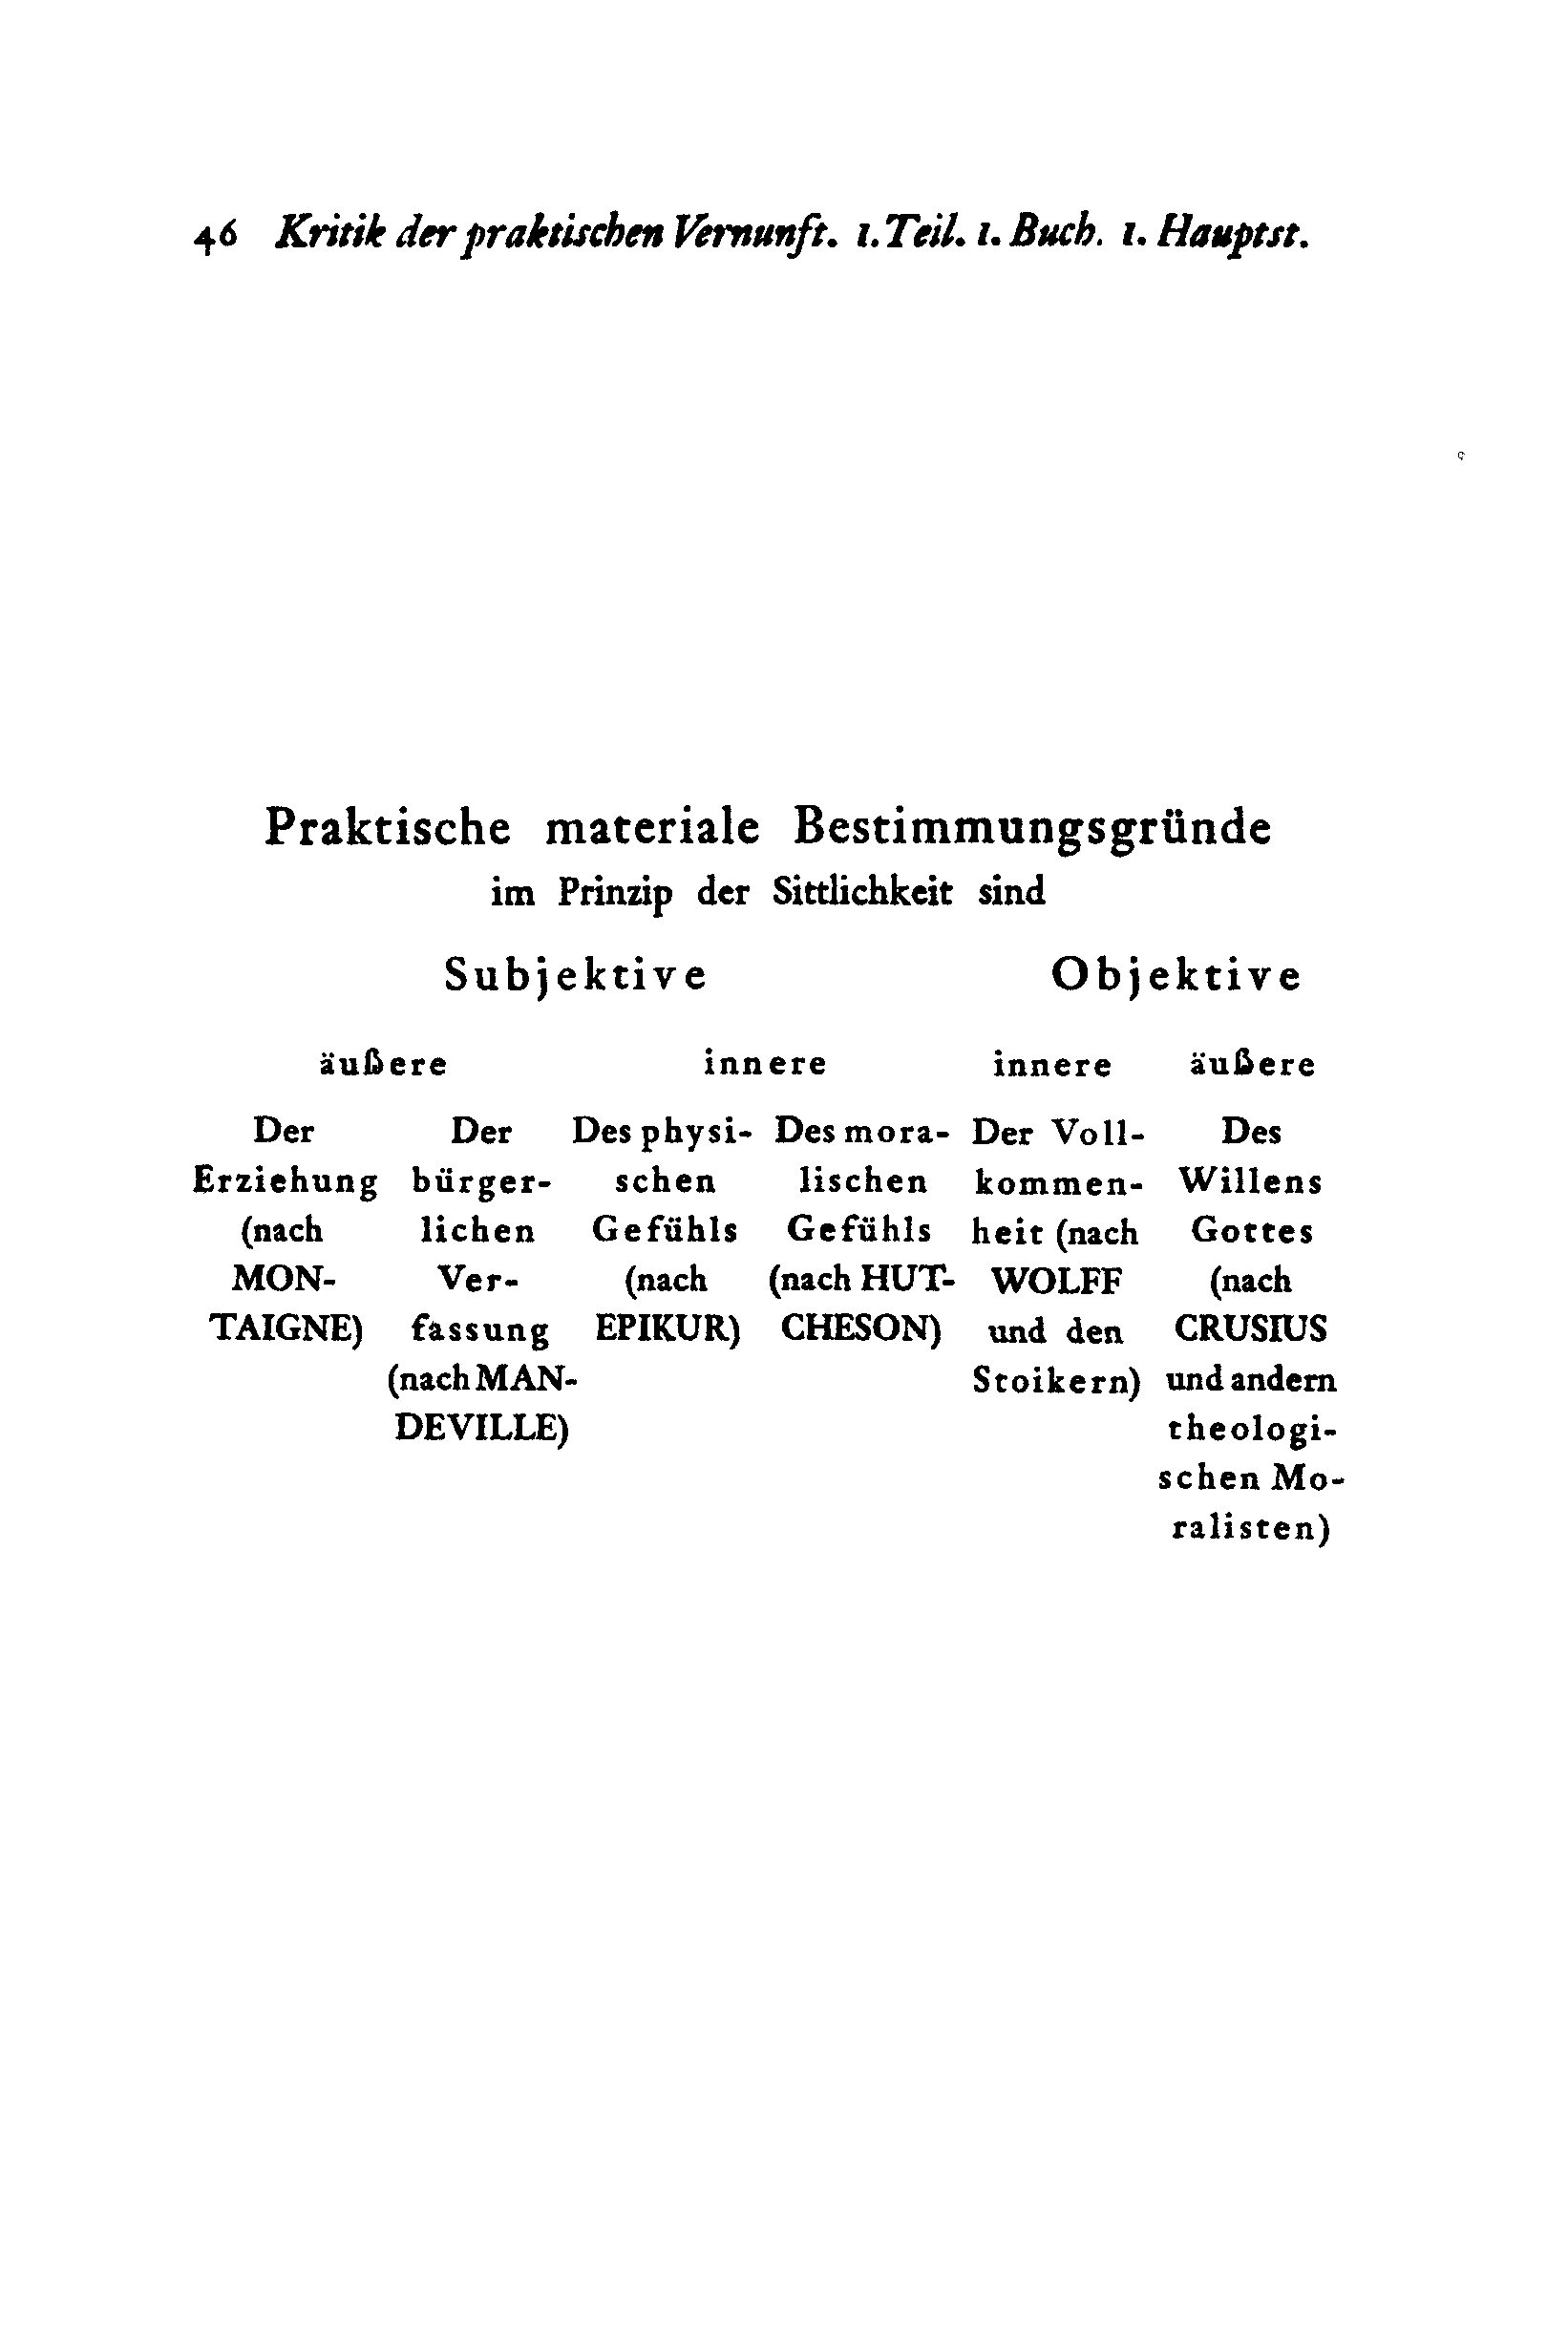 5 o Kritik der praktischen Vernunft. /. Teil. i. Buch. i. Haupt st.